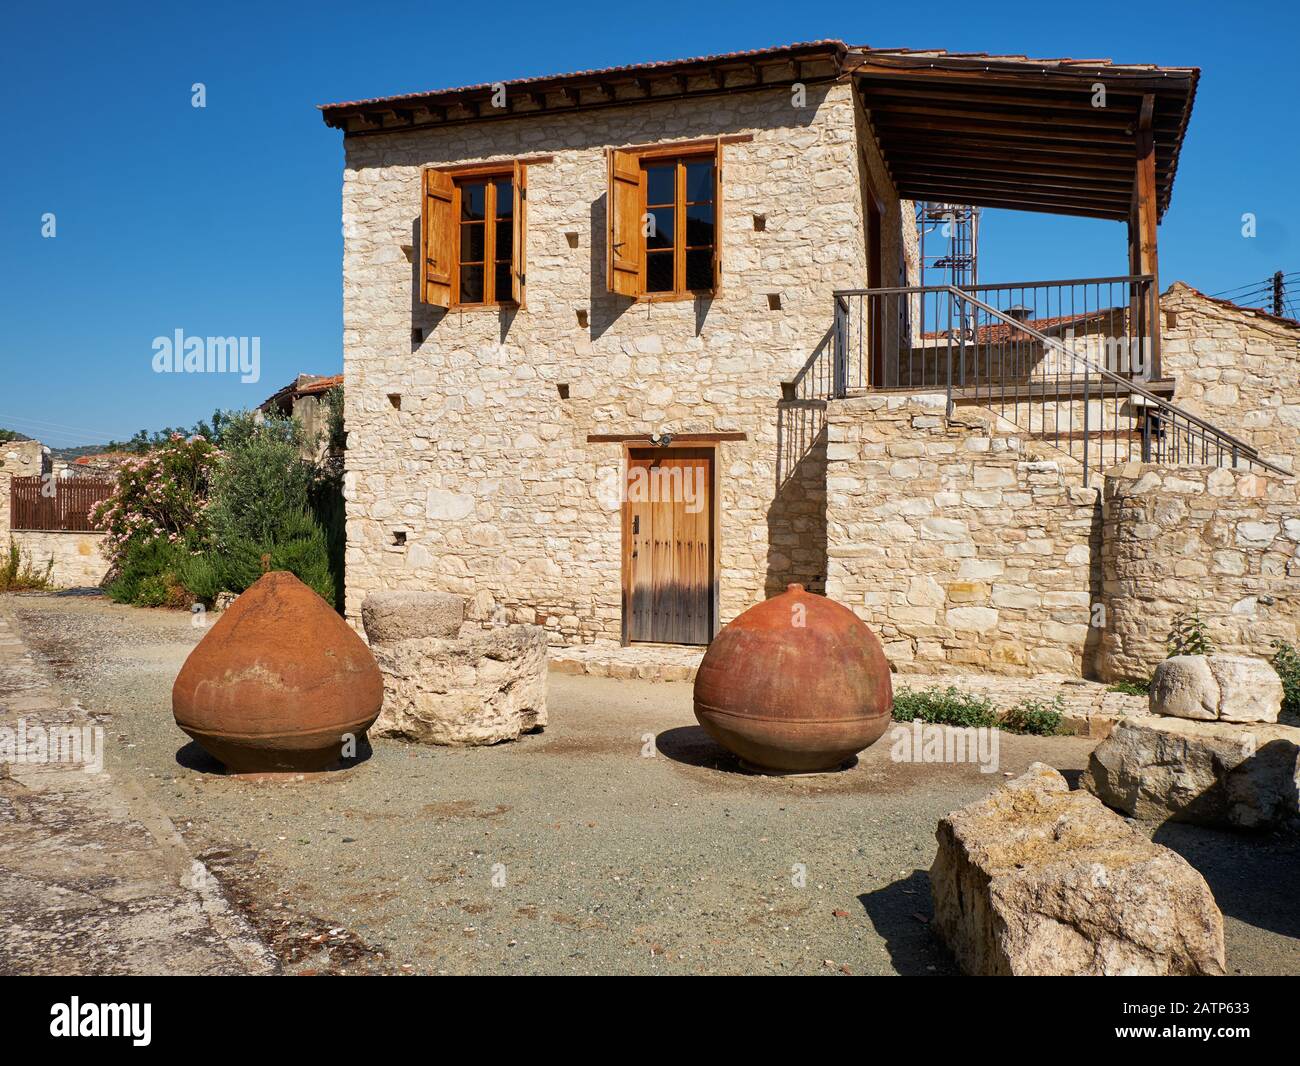 Casa de piedra tradicional con ánforas de vino de barro volteadas en el patio. Pueblo lania. Limassol. Chipre Foto de stock